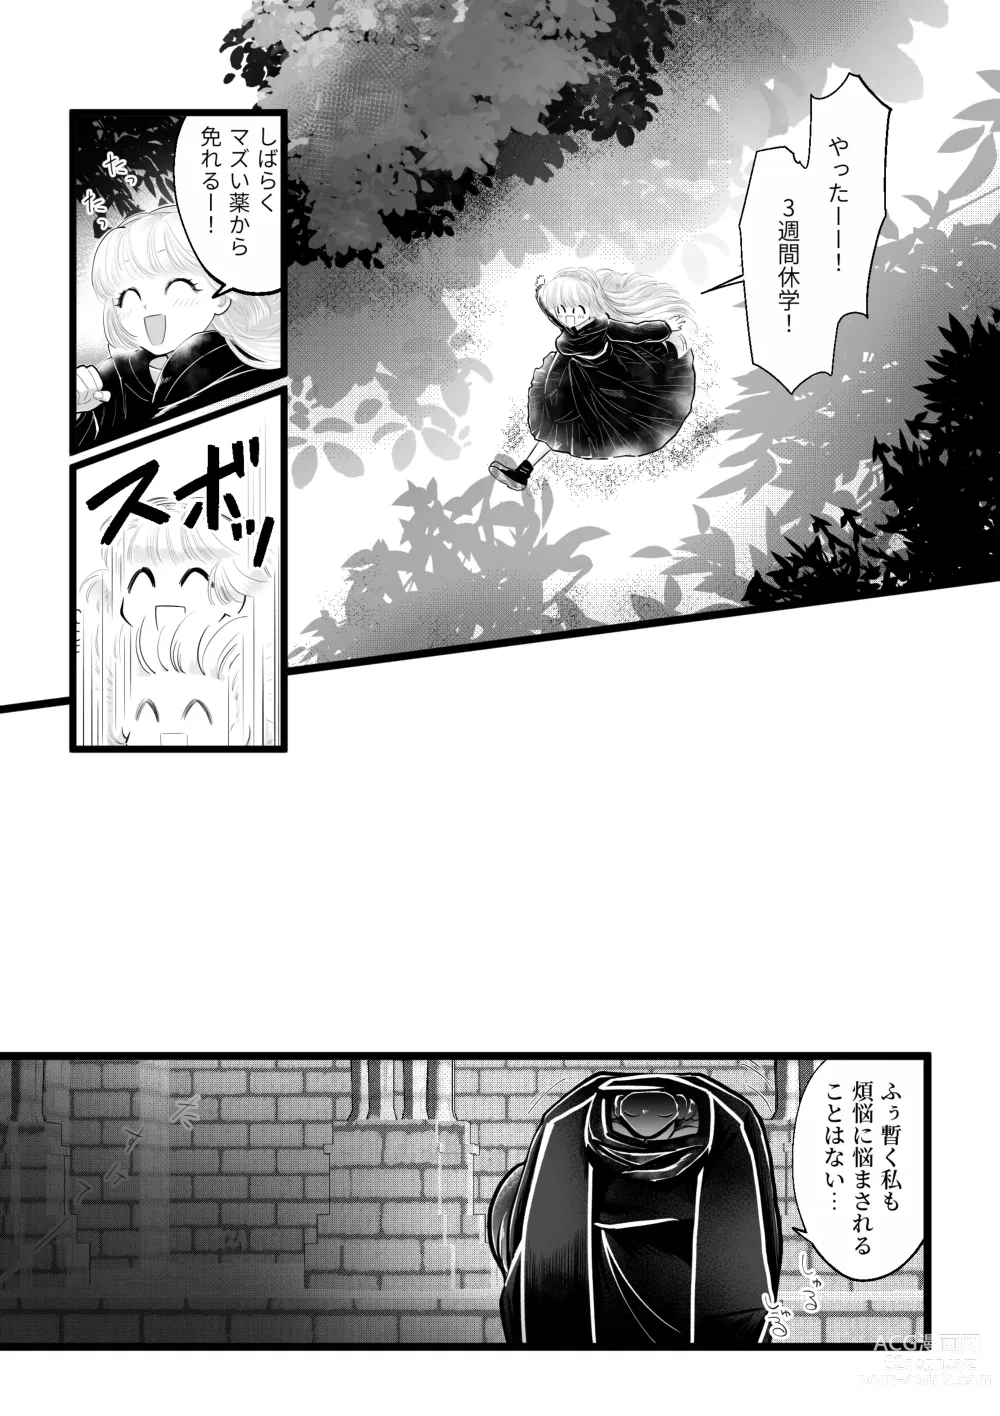 Page 12 of doujinshi Dakatsu no Gotoku Osoreteita Sensei to Kazukazu no Ero Happening ni Mimawarete Kindan no Kankaku Shadan Otoshiana Kouishou Chiryou